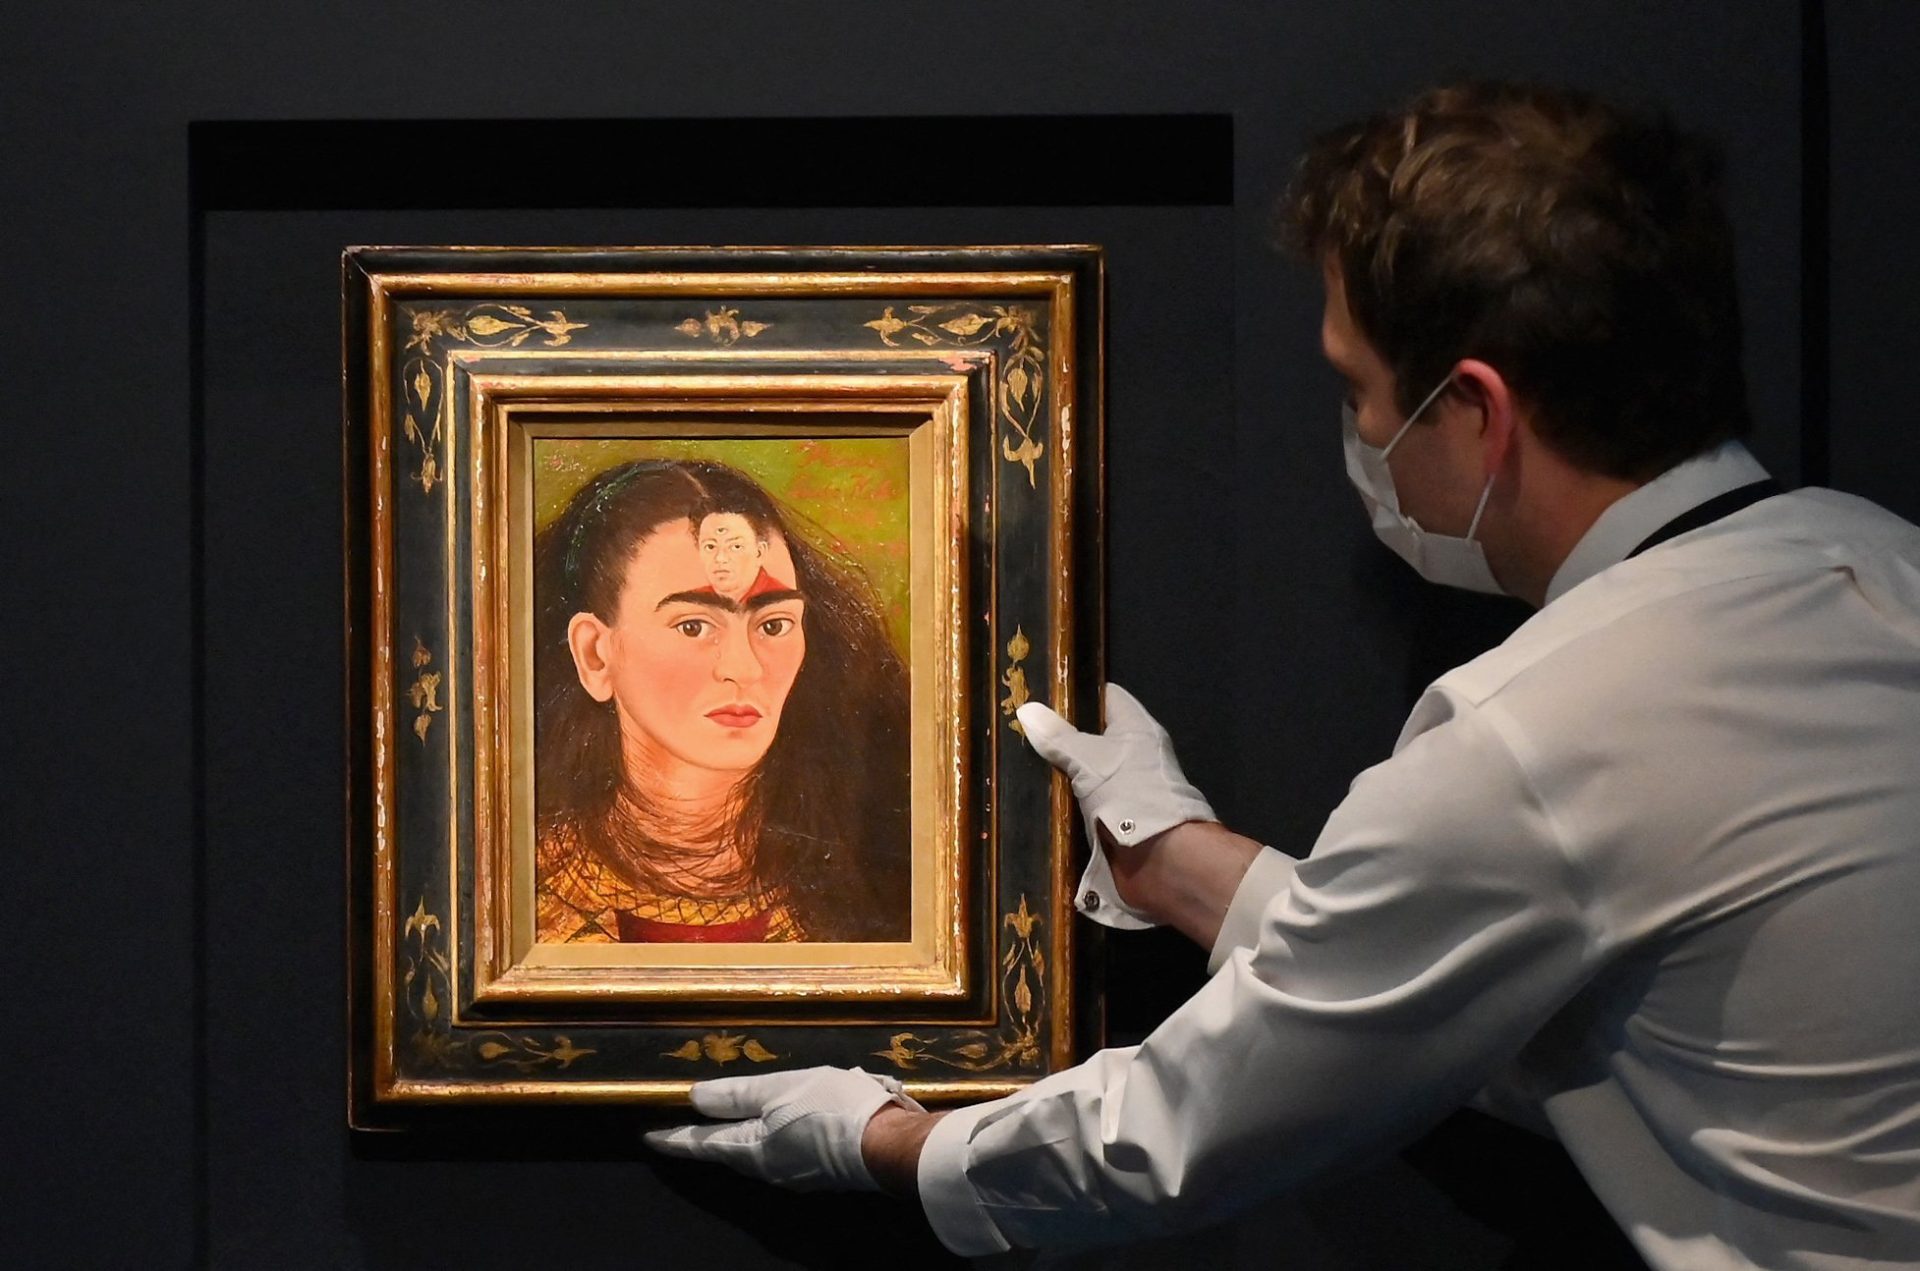 Quadro de Frida Kahlo alcança valor recorde de 34,9 milhões de dólares em leilão